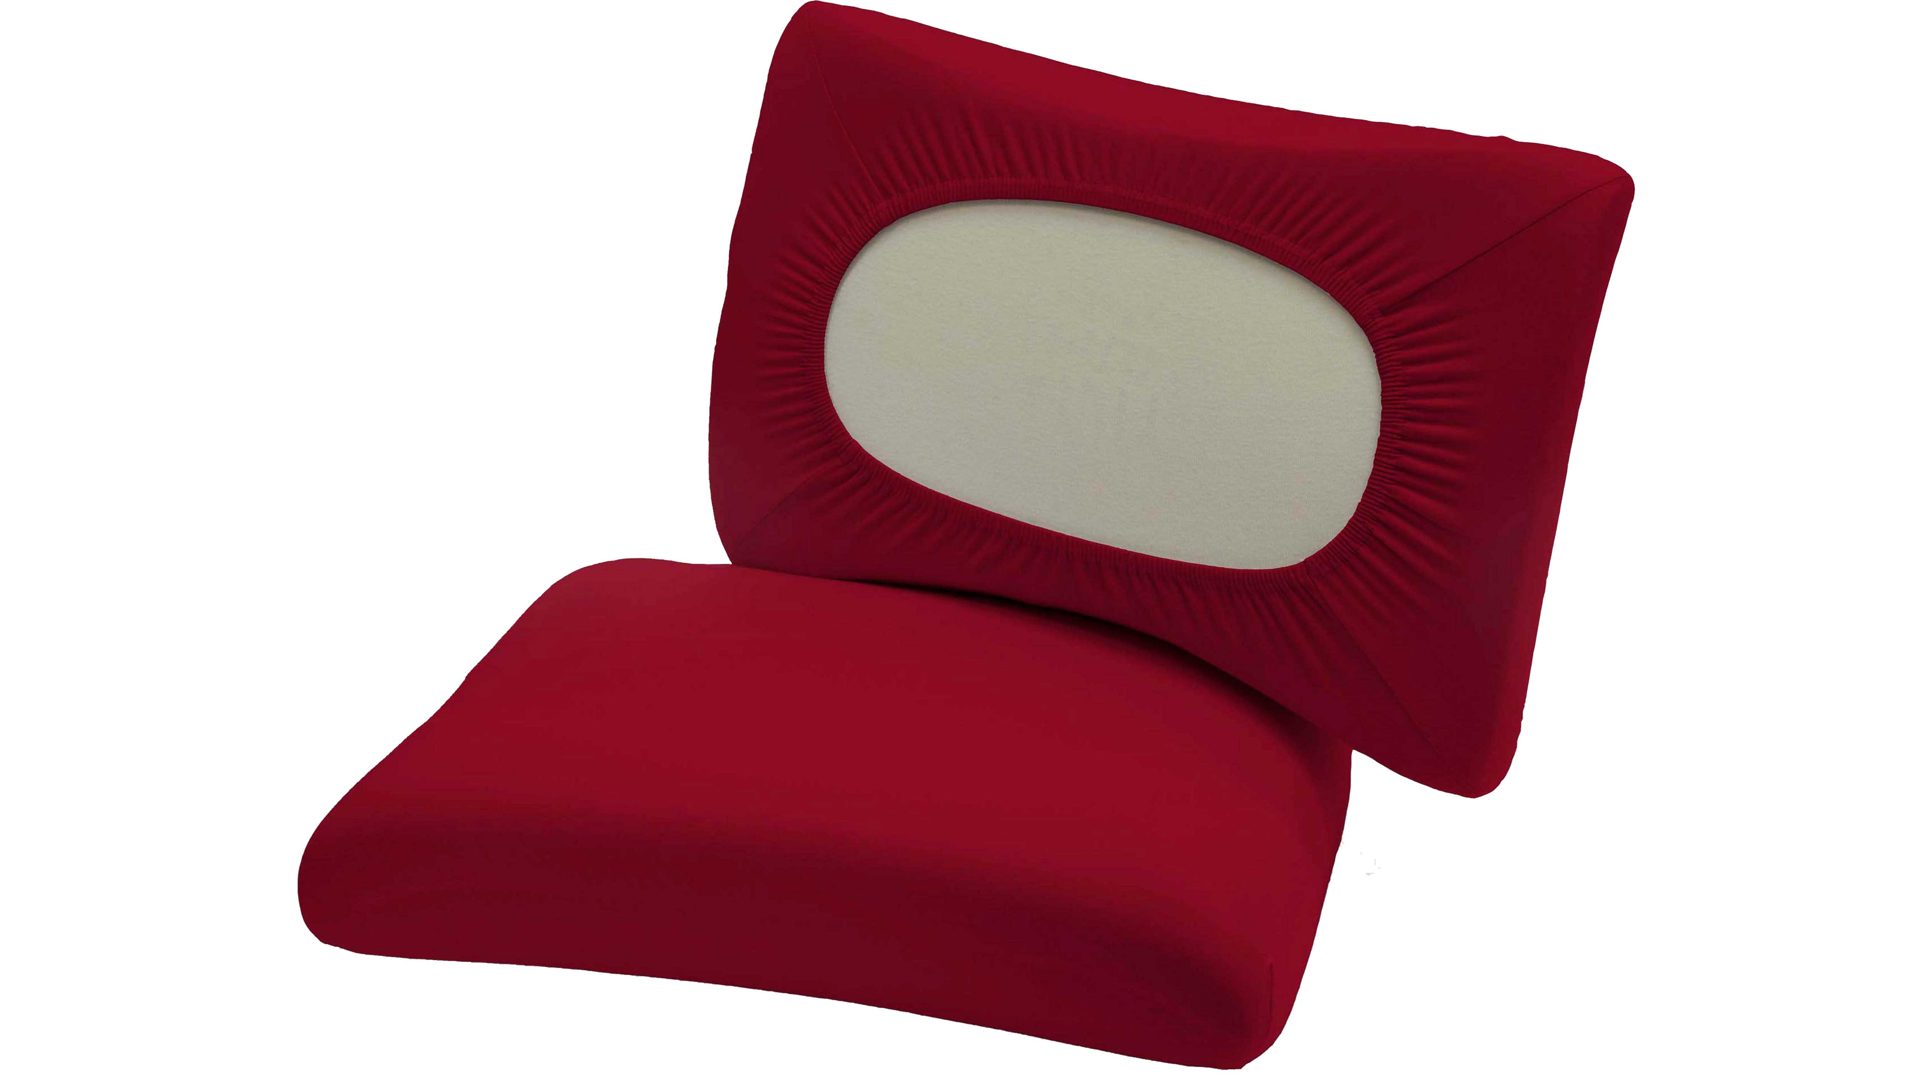 Kissenbezug /-hülle H.g. hahn haustextilien aus Stoff in Rot Universal-Kissenbezug rote Baumwolle - Größe S-XL